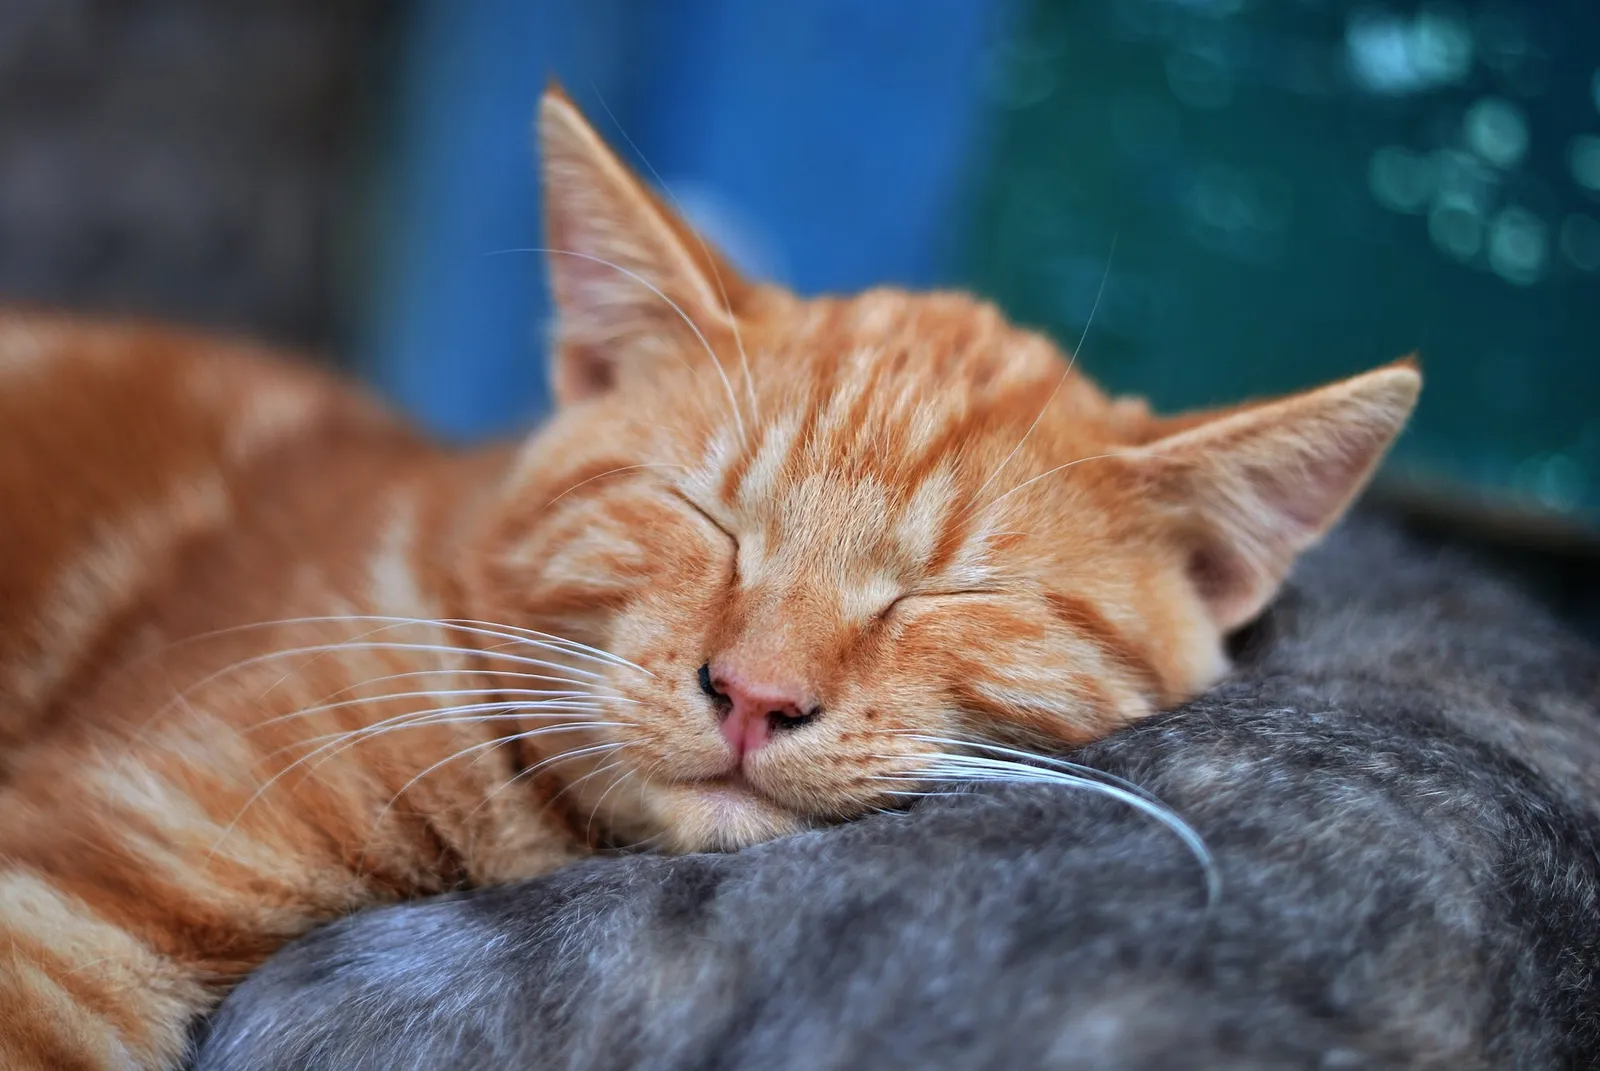 Kucingmu Mager dan Tidur Terus? Begini Penjelasan Ilmiahnya